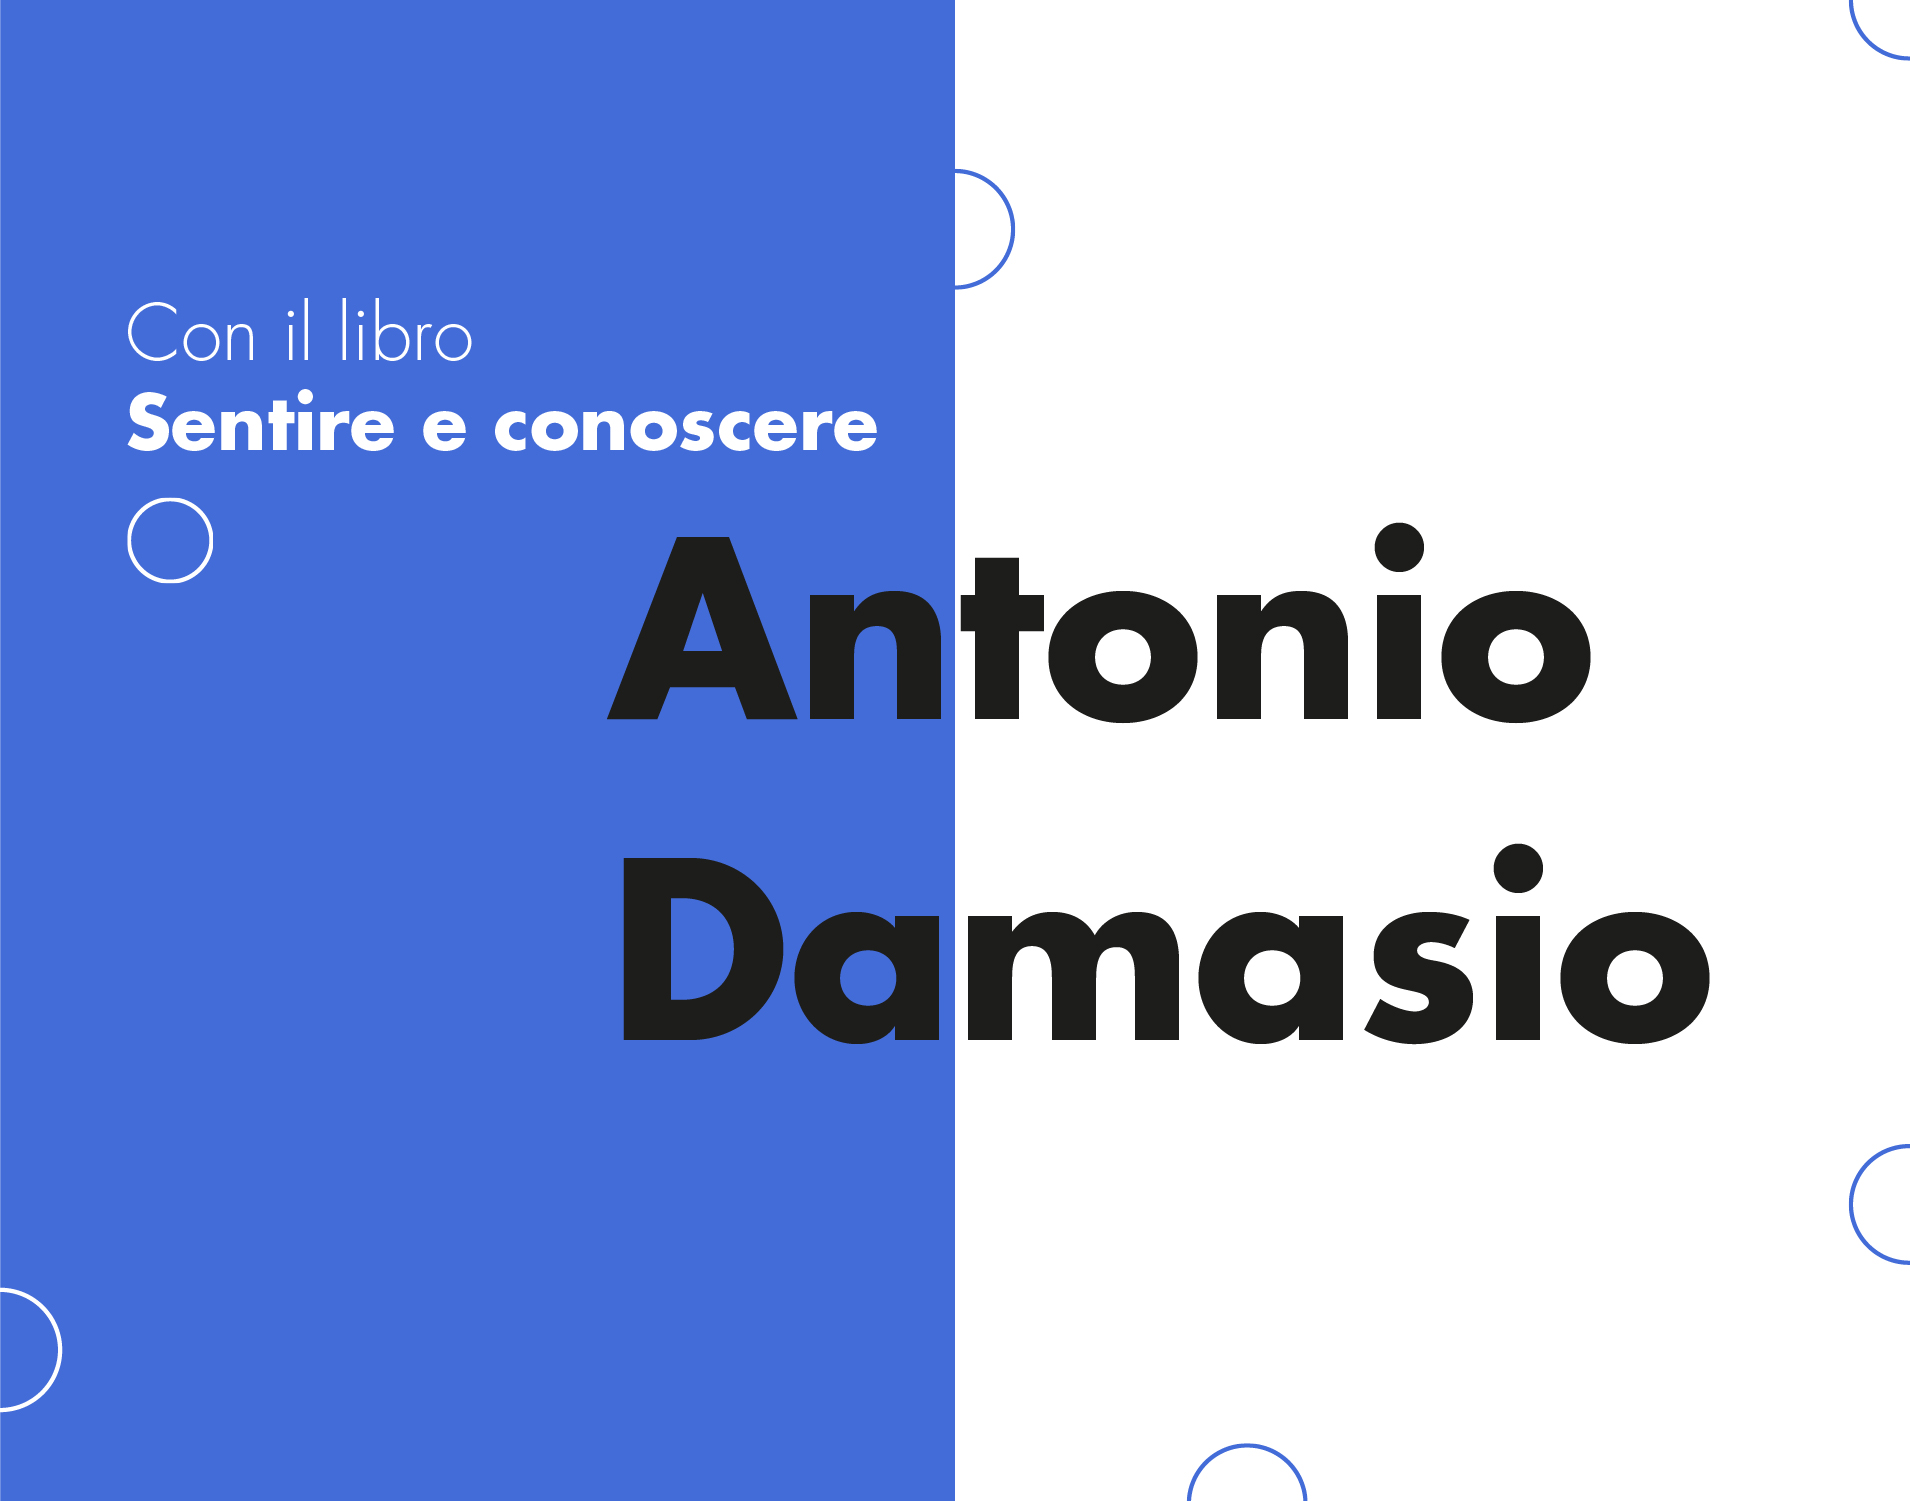 Antonio Damasio: Sentire e conoscere - Antonio Damasio 24 Nov EVENTO